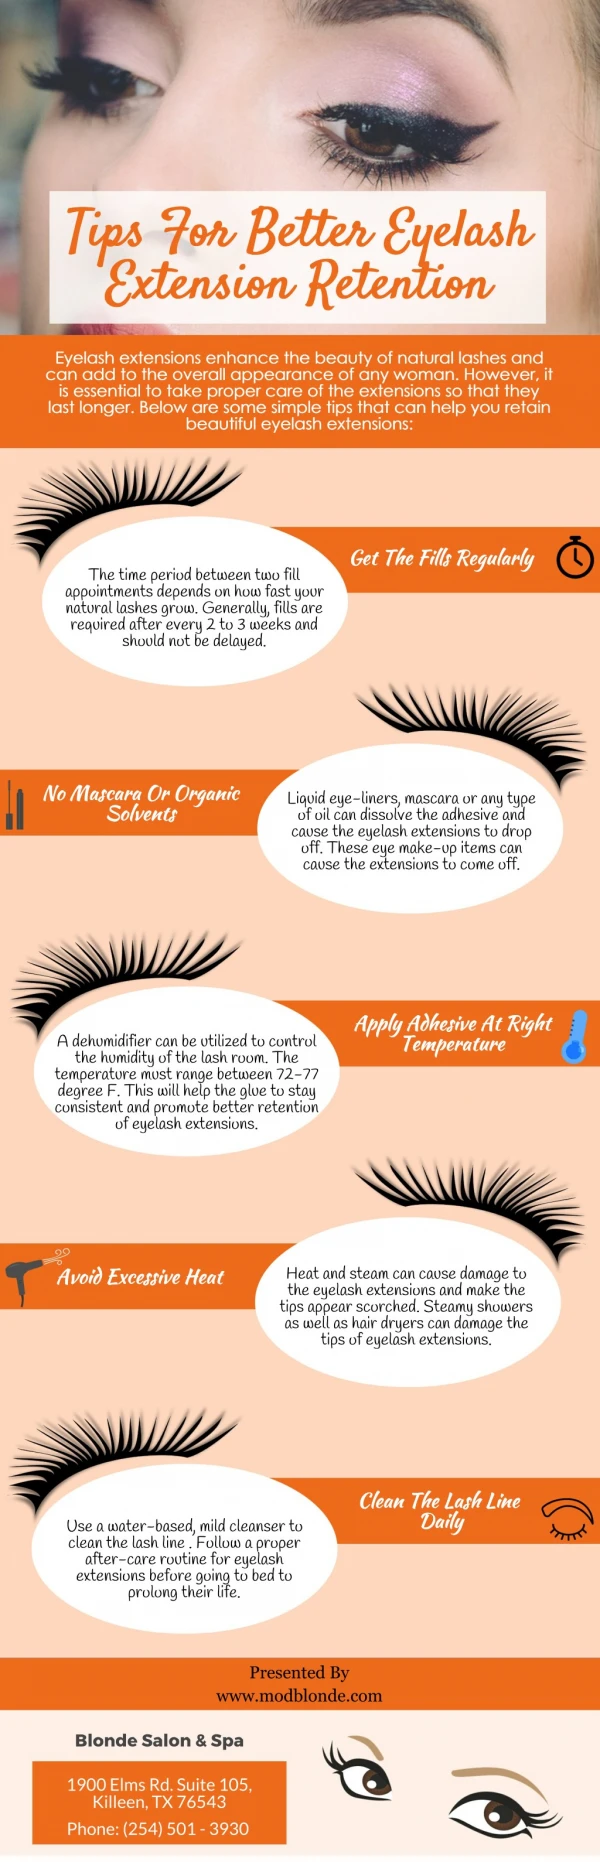 Tips For Better Eyelash Extension Retention